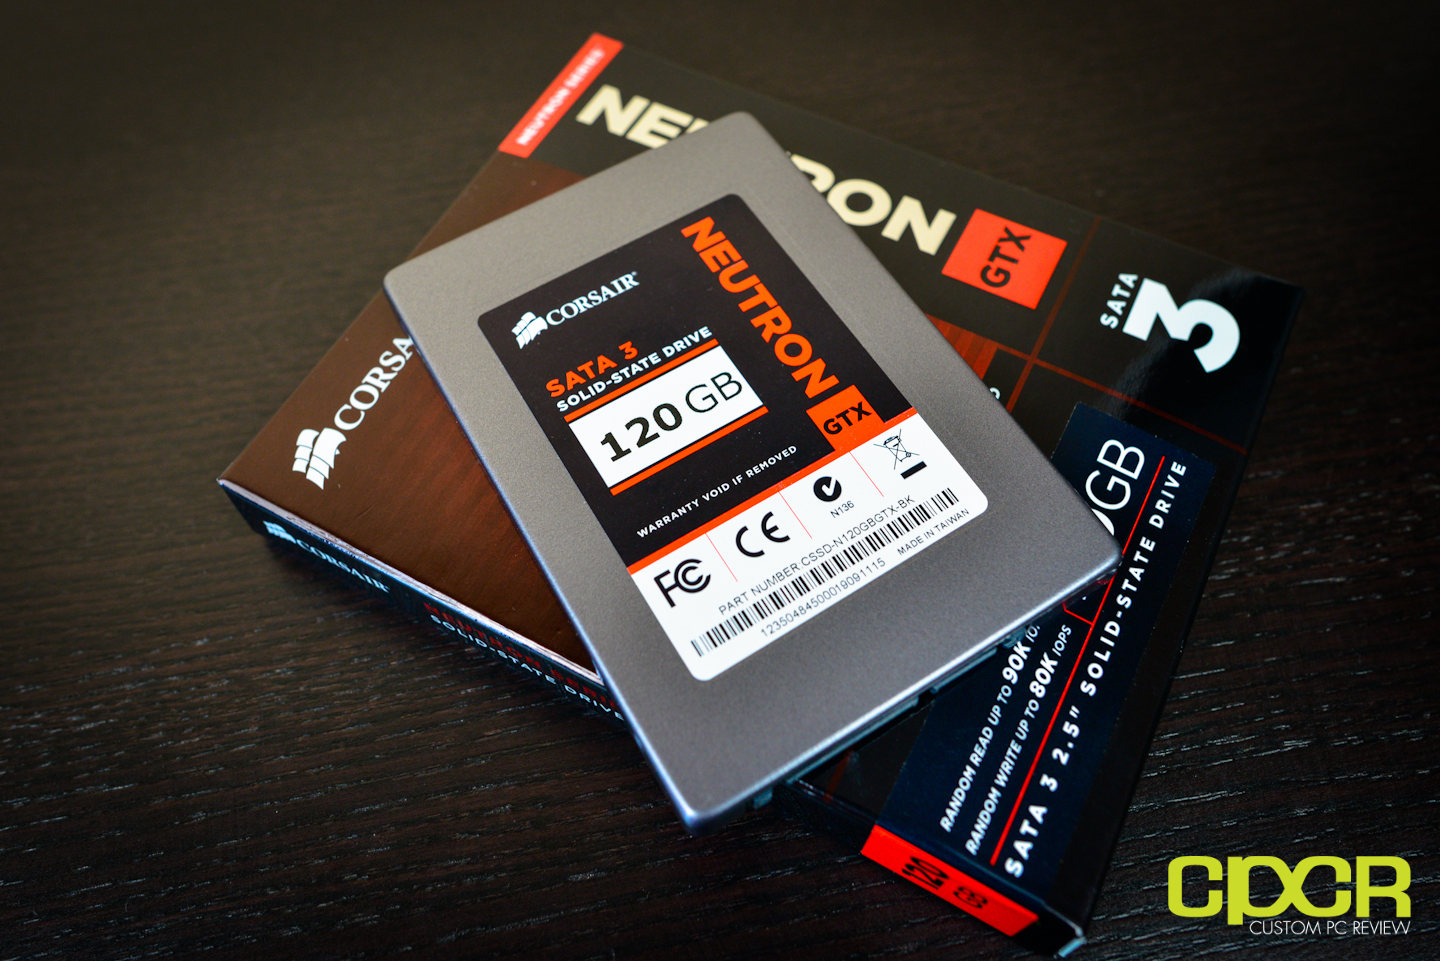 Corsair Neutron GTX 120GB SSD Review